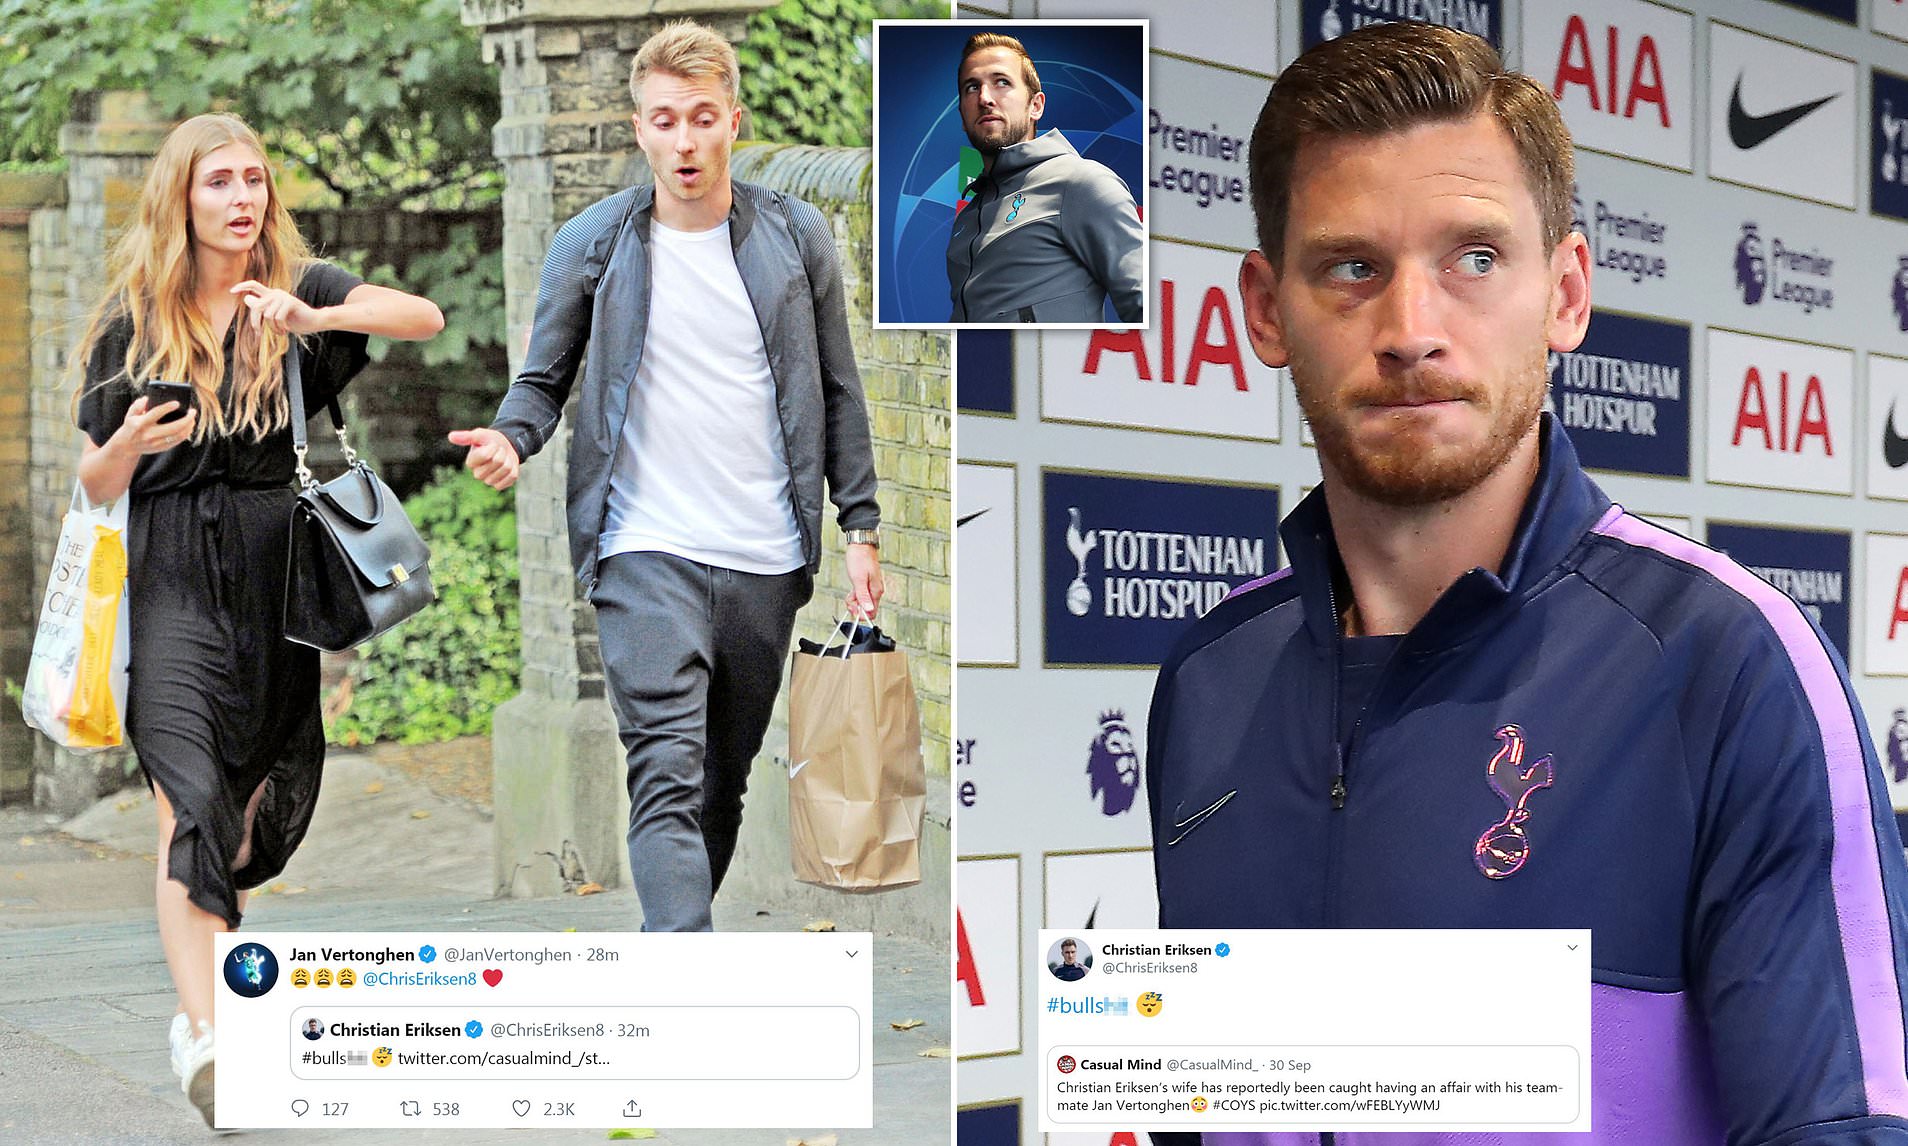 Tin đồn thêu dệt về chuyện bạn gái Eriksen ngoại tình với Vertonghen, đồng đội của anh tại Tottenham và đội tuyển Bỉ.